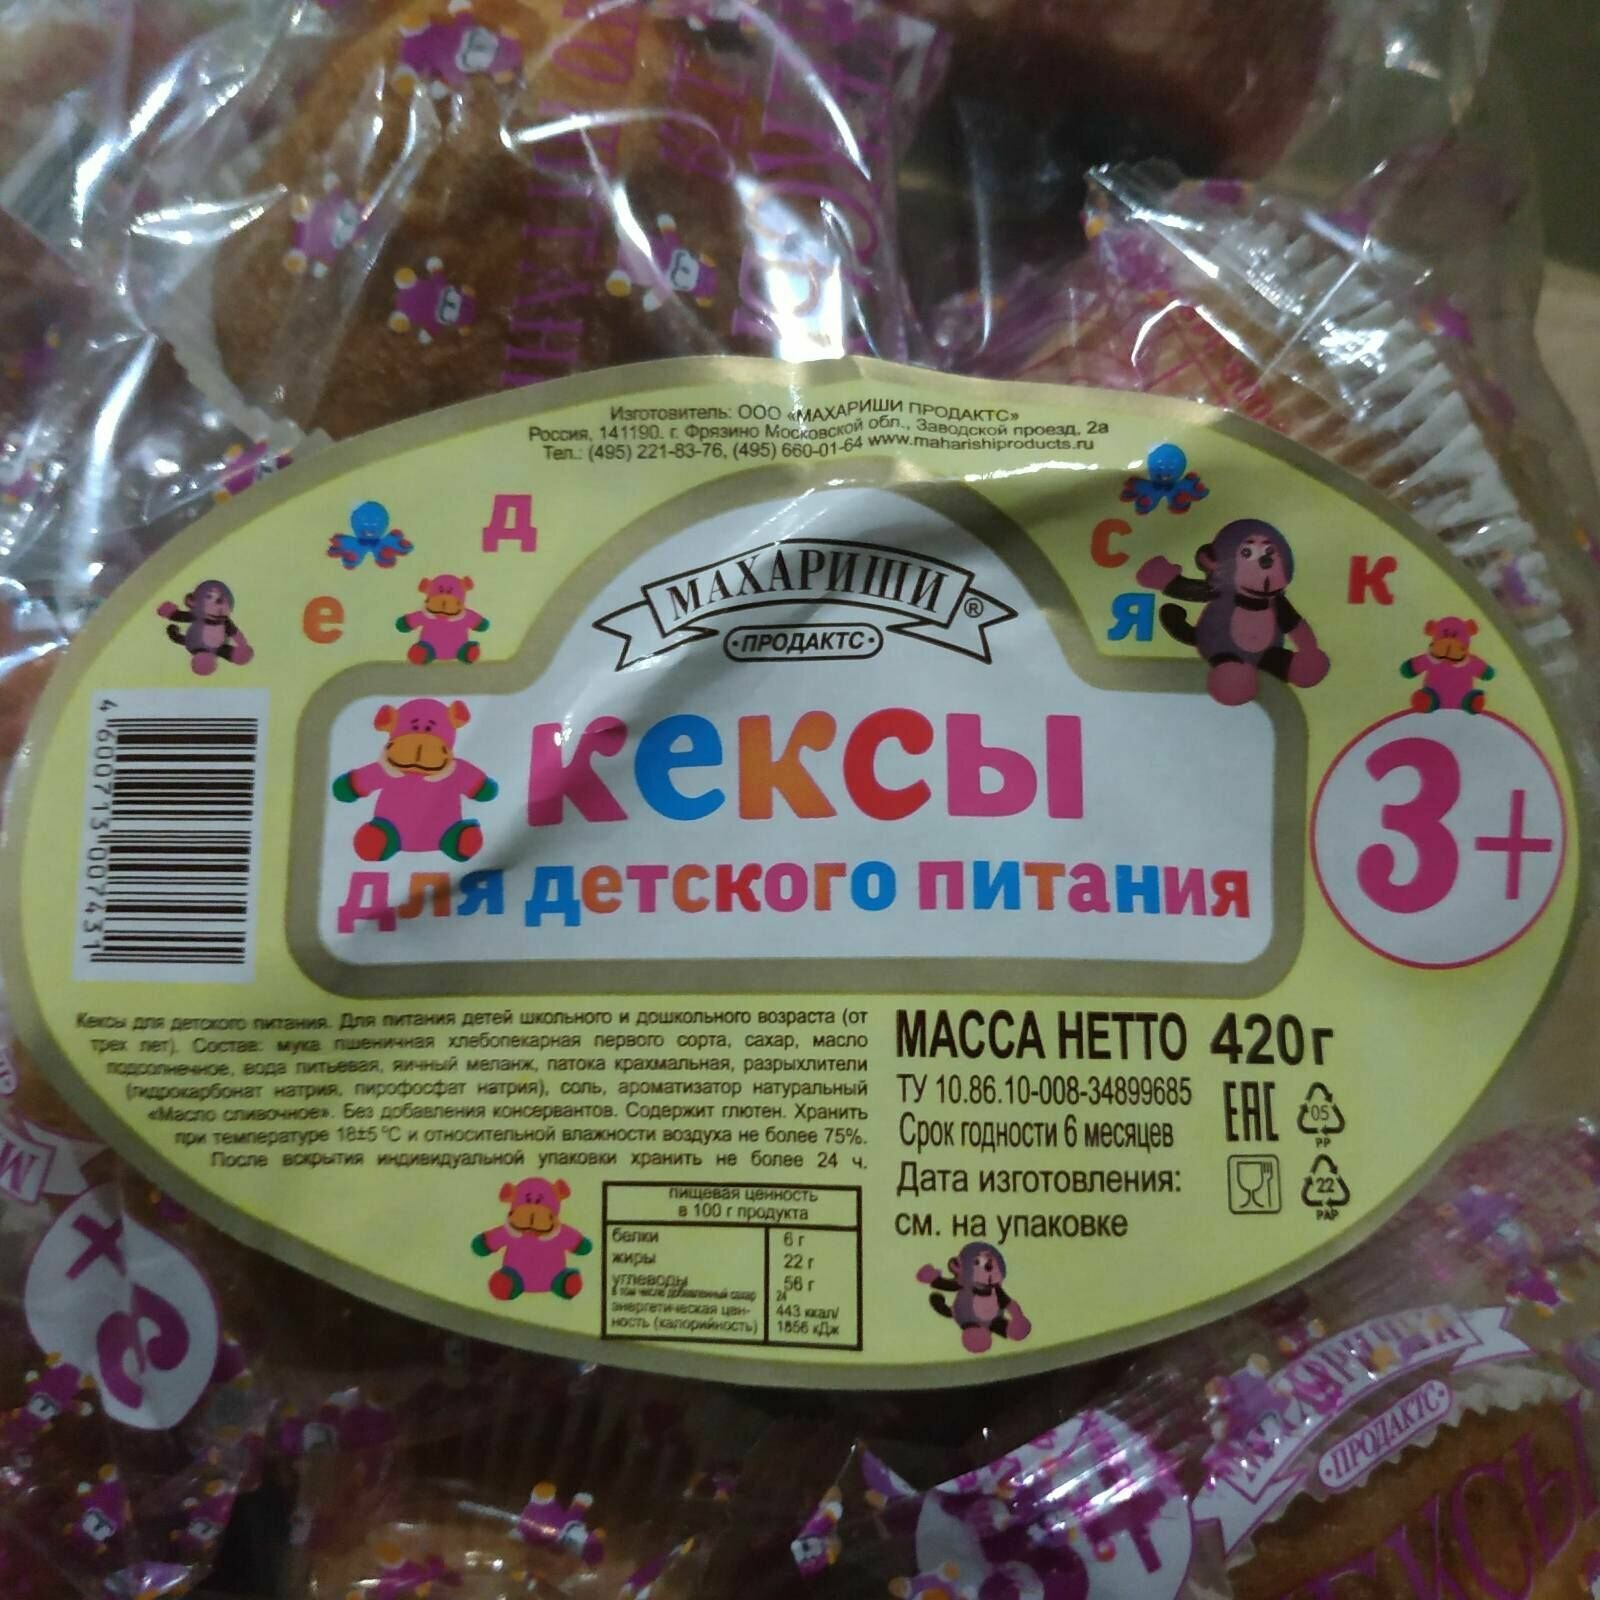 Кексы для детского питания 3+, (1 уп. - 420г.)